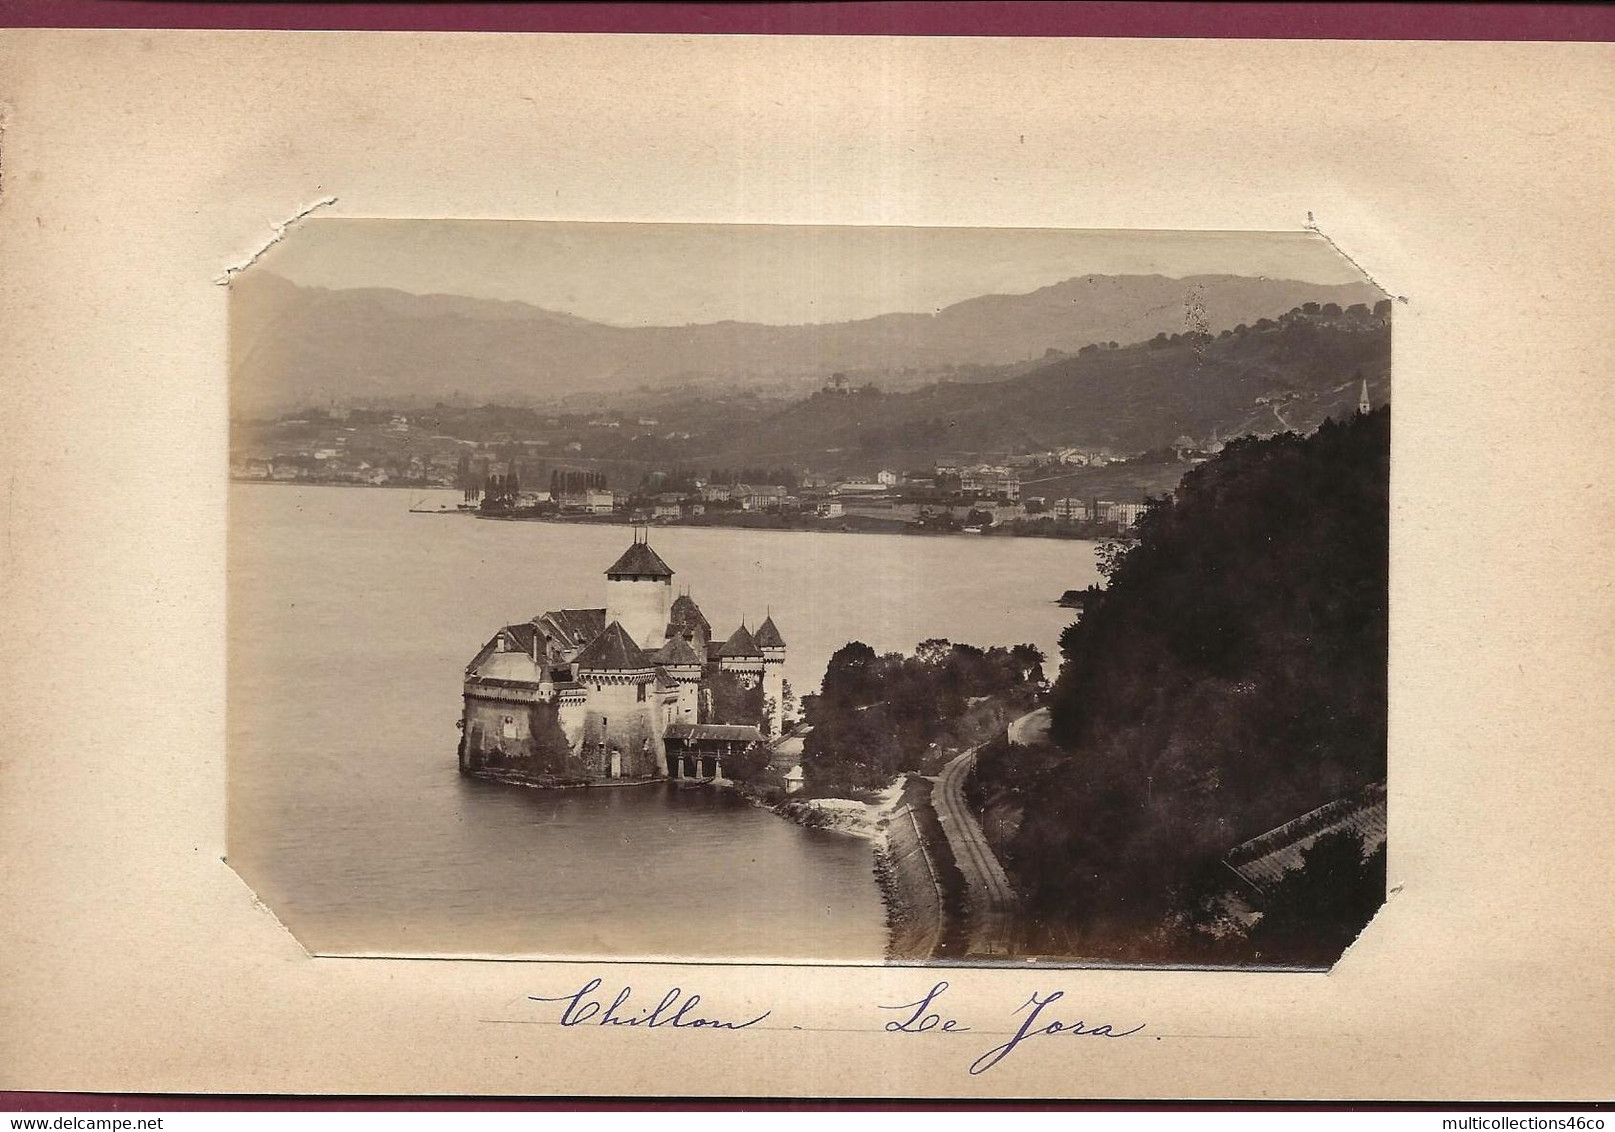 240721A - PHOTO 1890 - SUISSE VAUD VEYTAUX - Château De CHILLON - Le Jorat Forêt - Jorat-Mézières